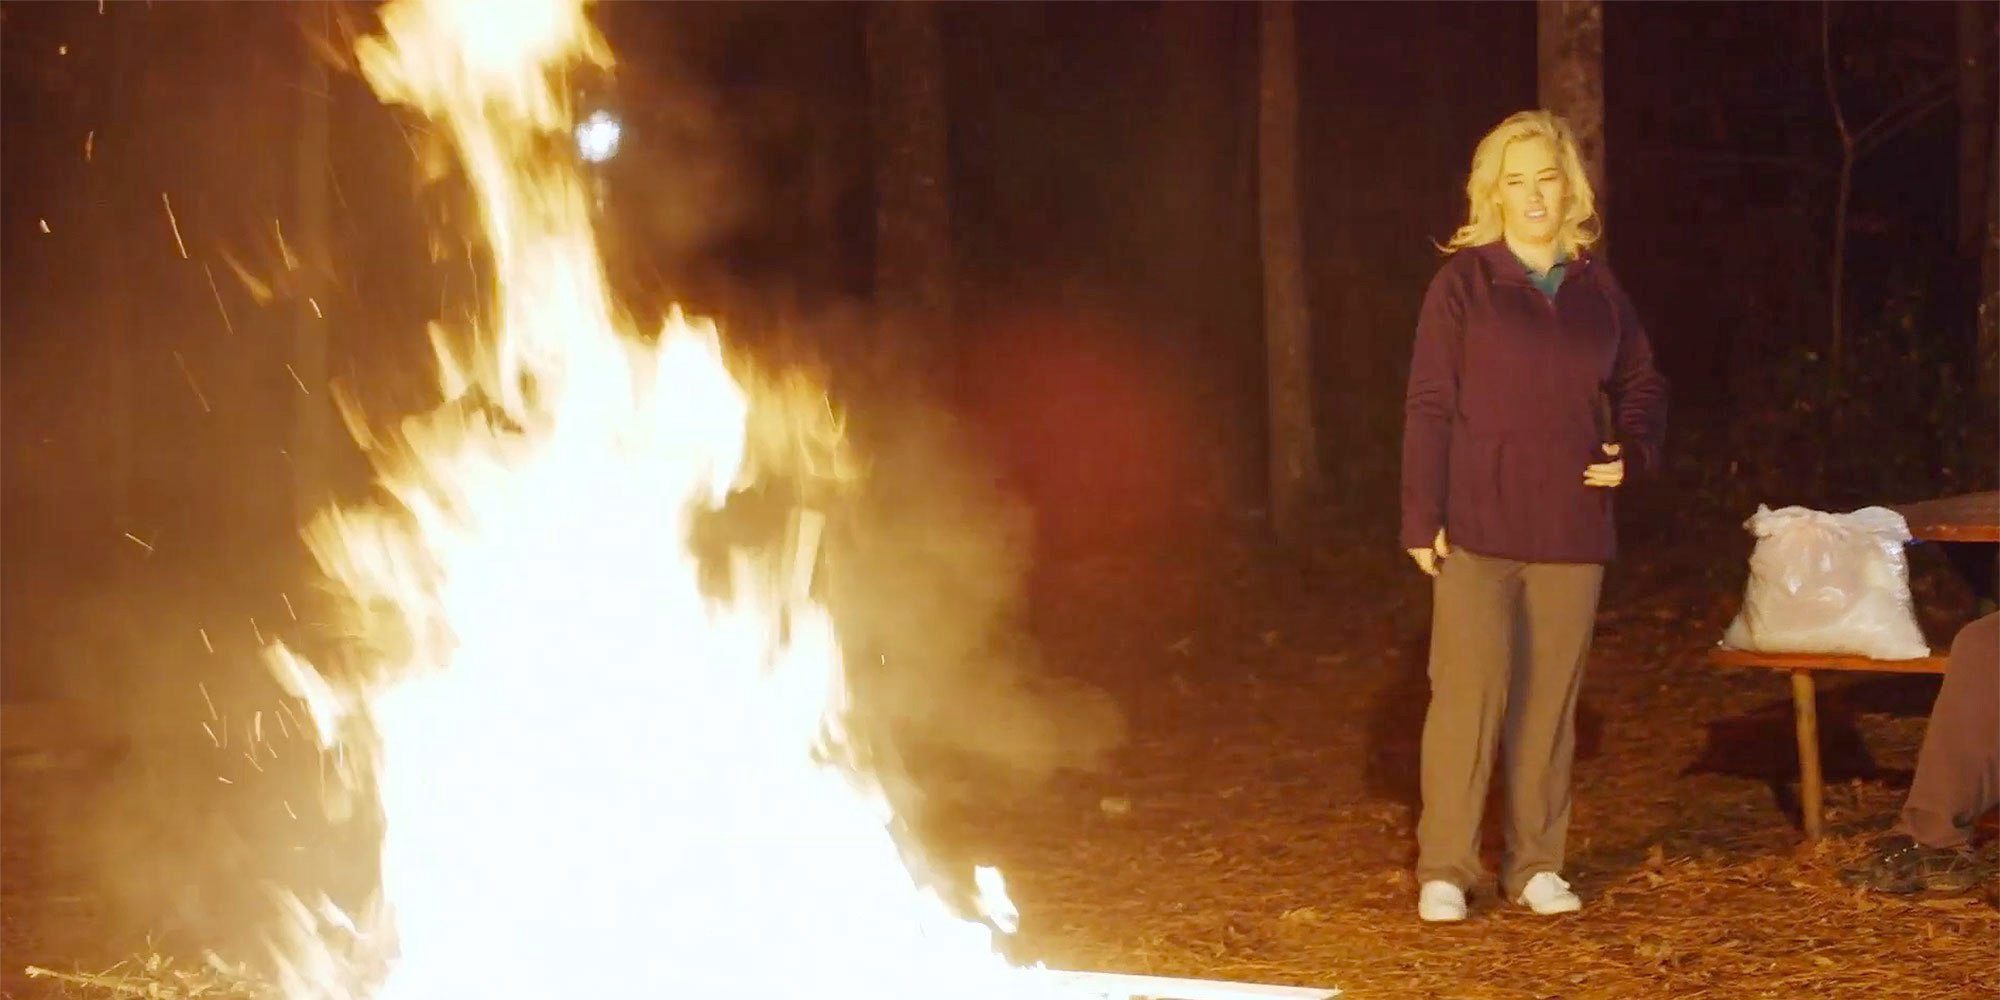 La madre de Honey Boo Boo quema toda la ropa que le recuerda a su vida con sobrepeso